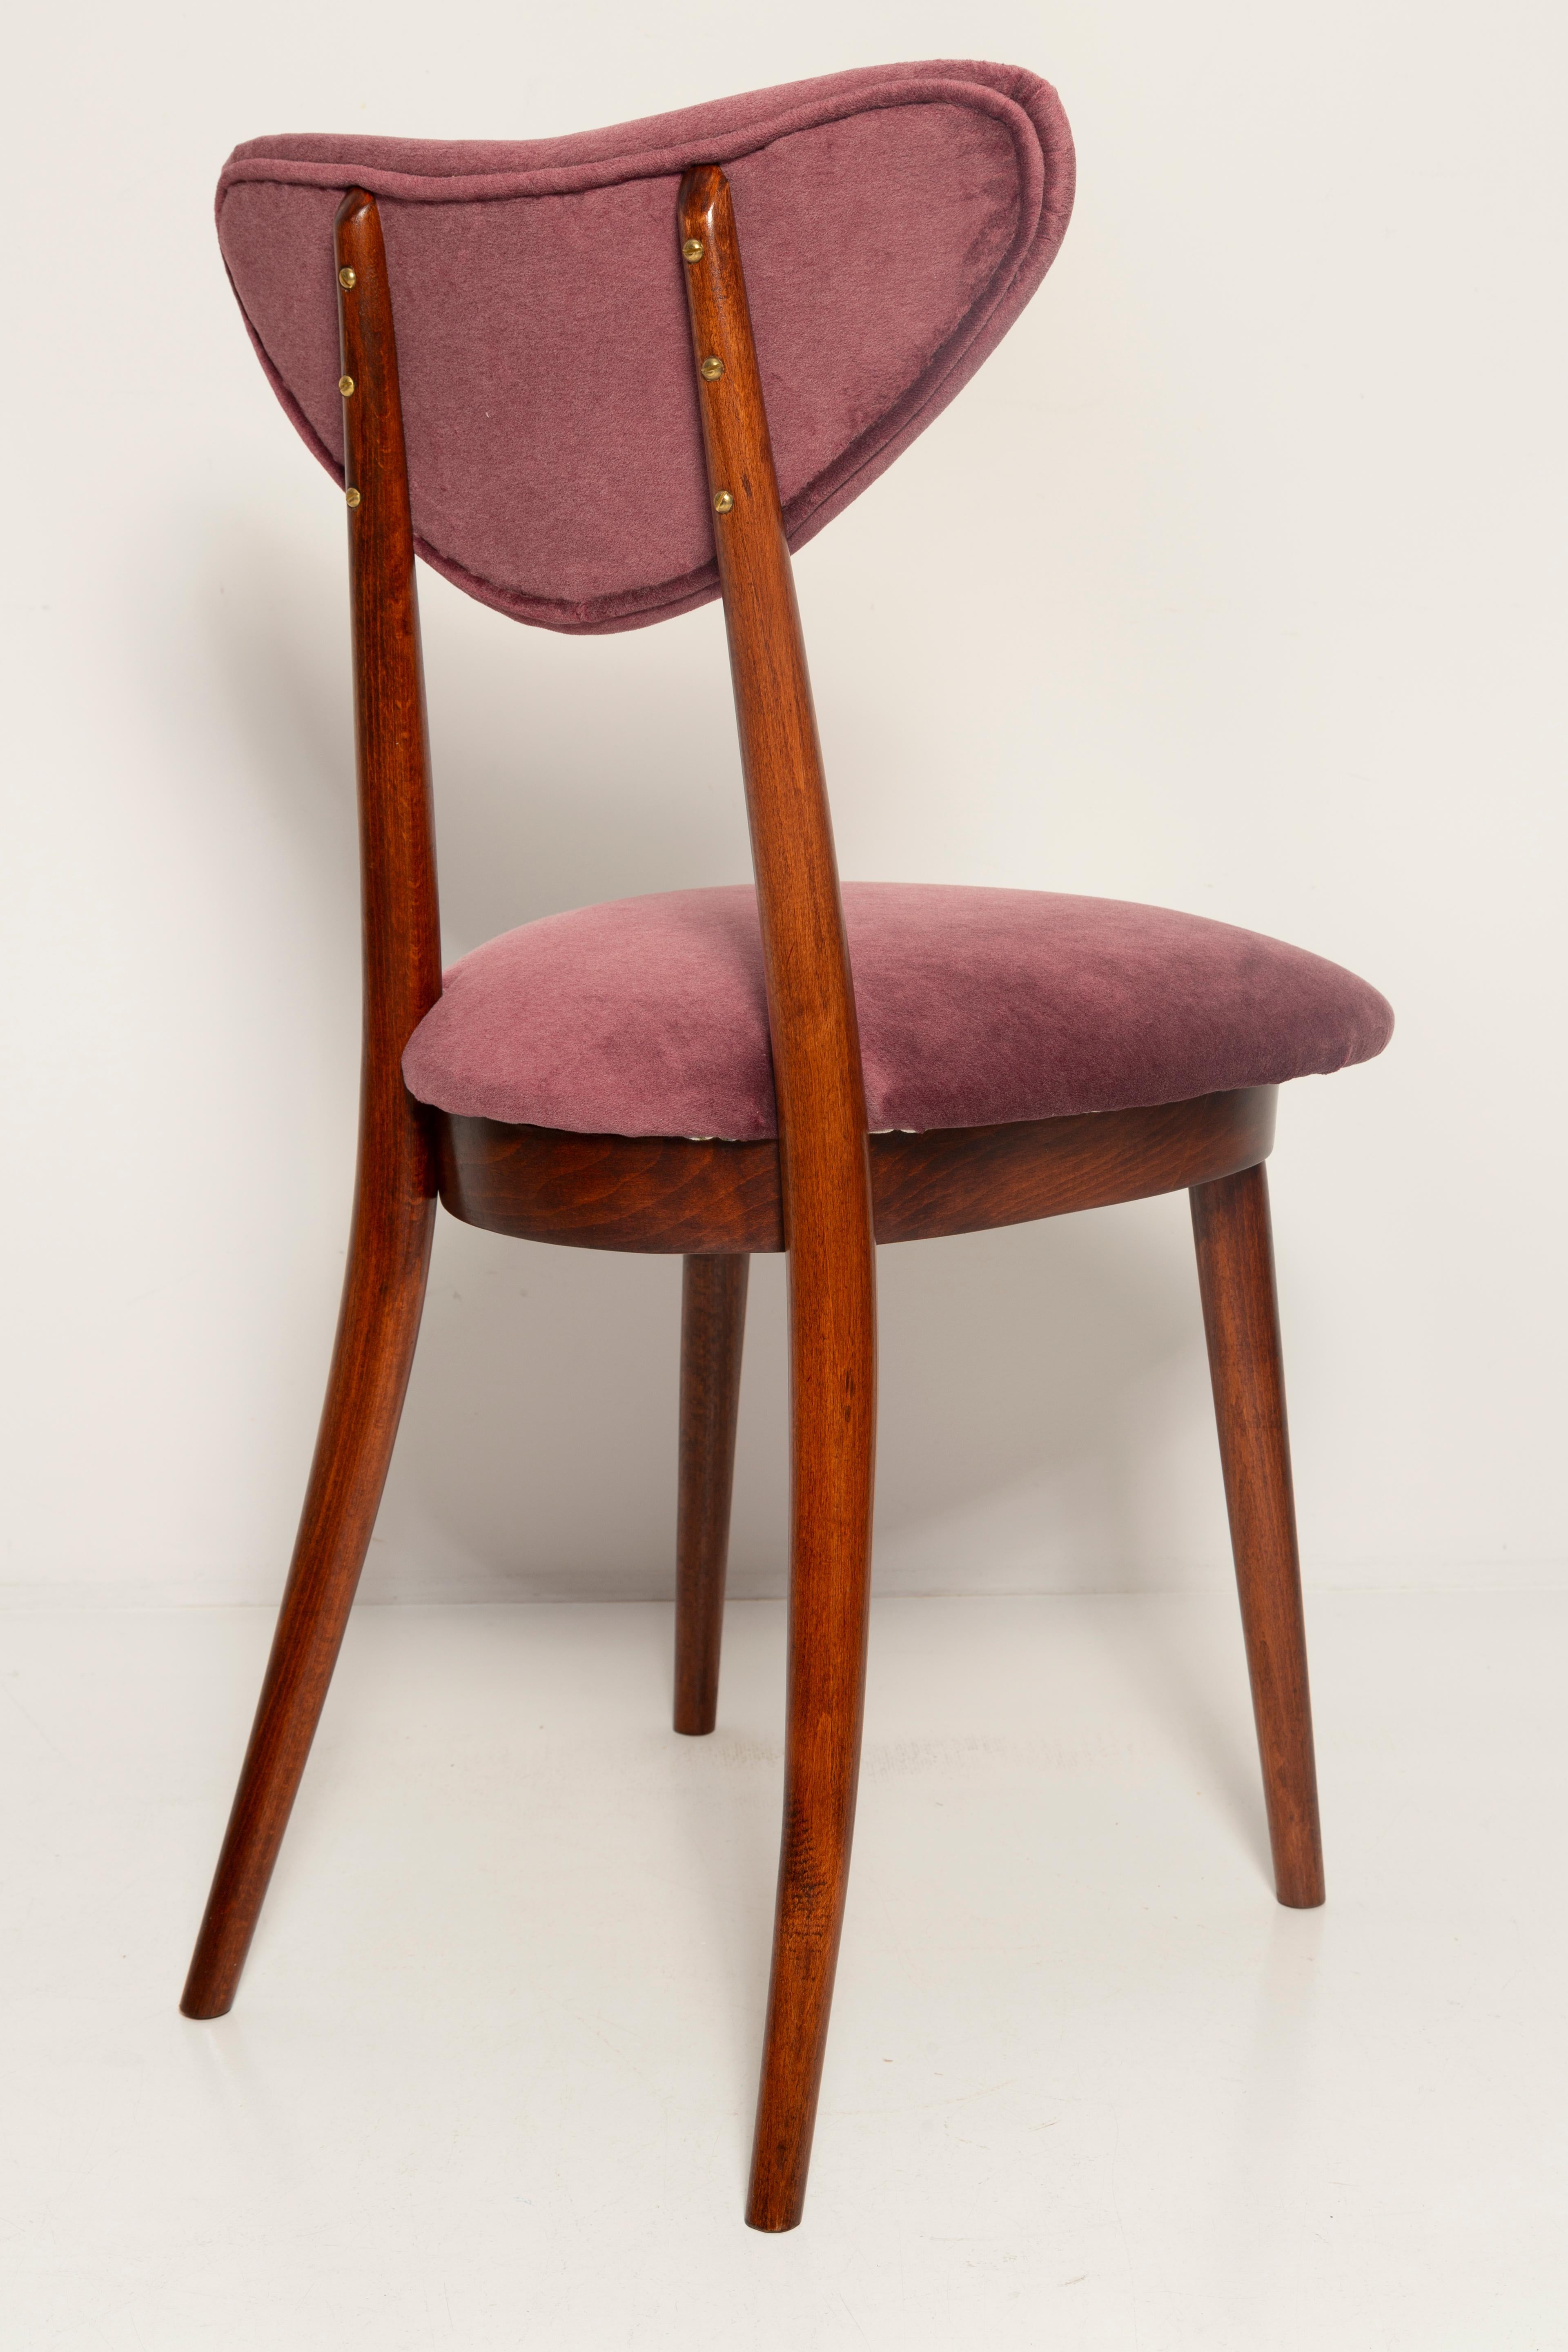 Midcentury Plum Violet Velvet Heart Chair, Europe, 1960s For Sale 3